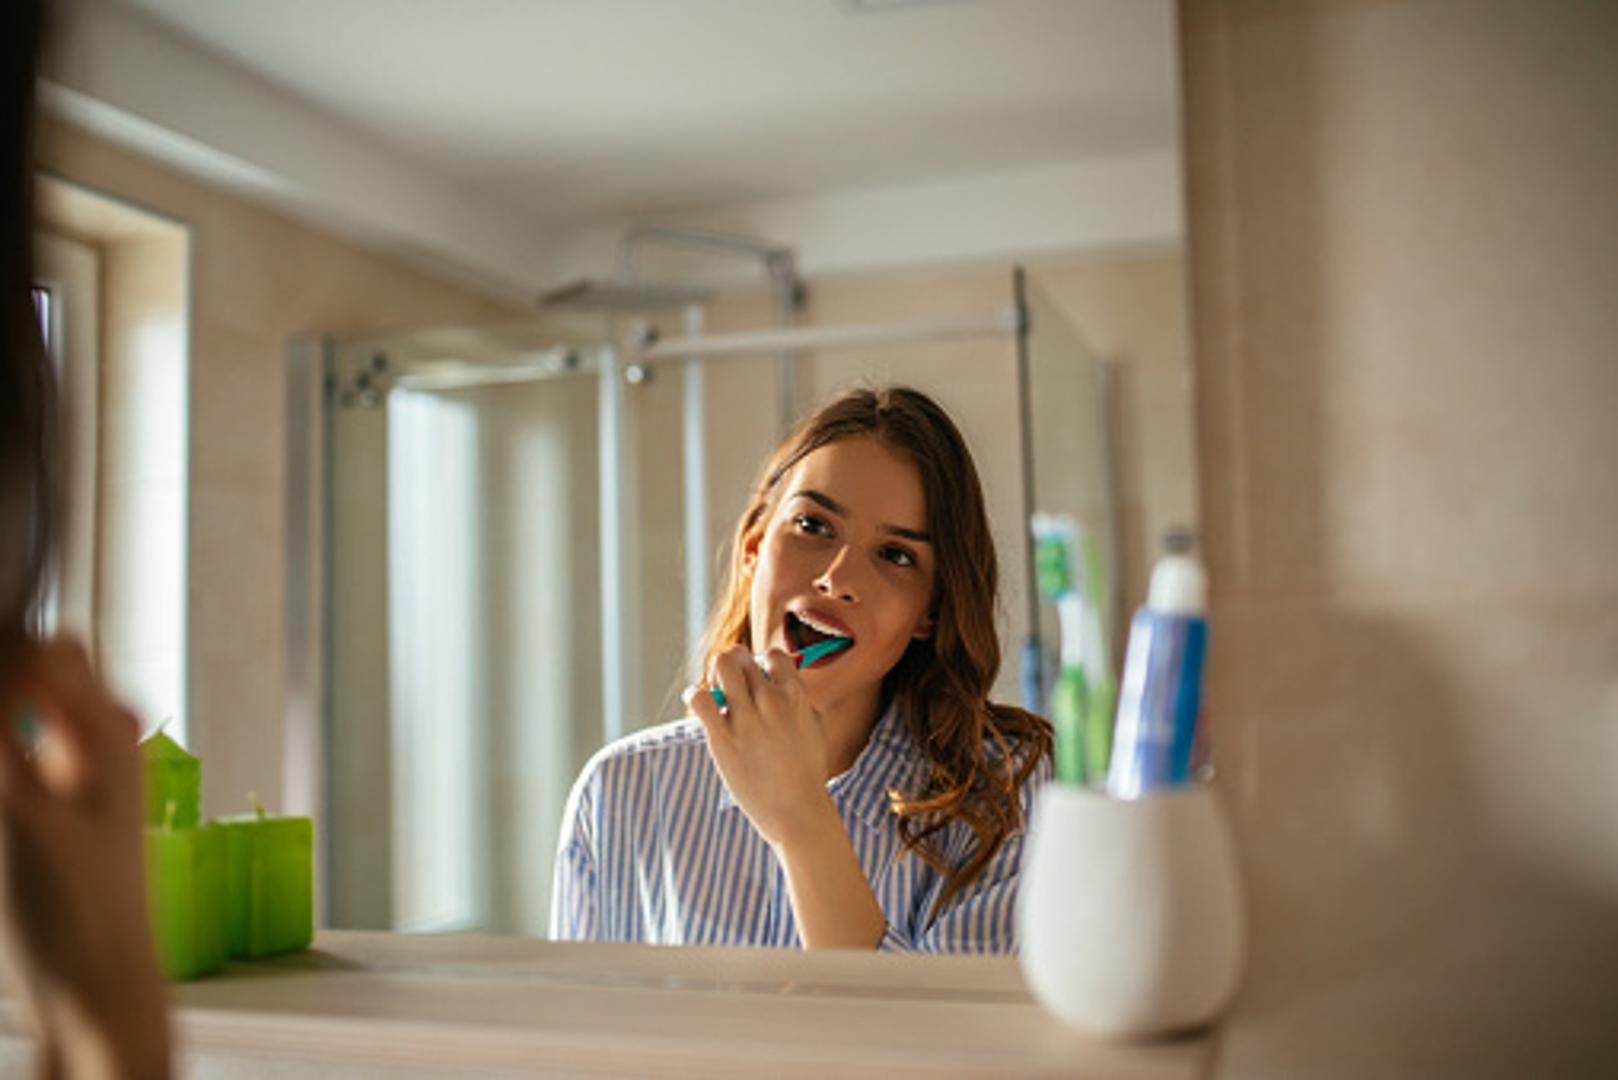 Zube je važno prati dva puta dnevno, a uz to se preporučuje korištenje i konca za zube kako bi se uklonili ostaci hrane. Isto tako, četkica se treba promijeniti svaka dva do tri mjeseca.